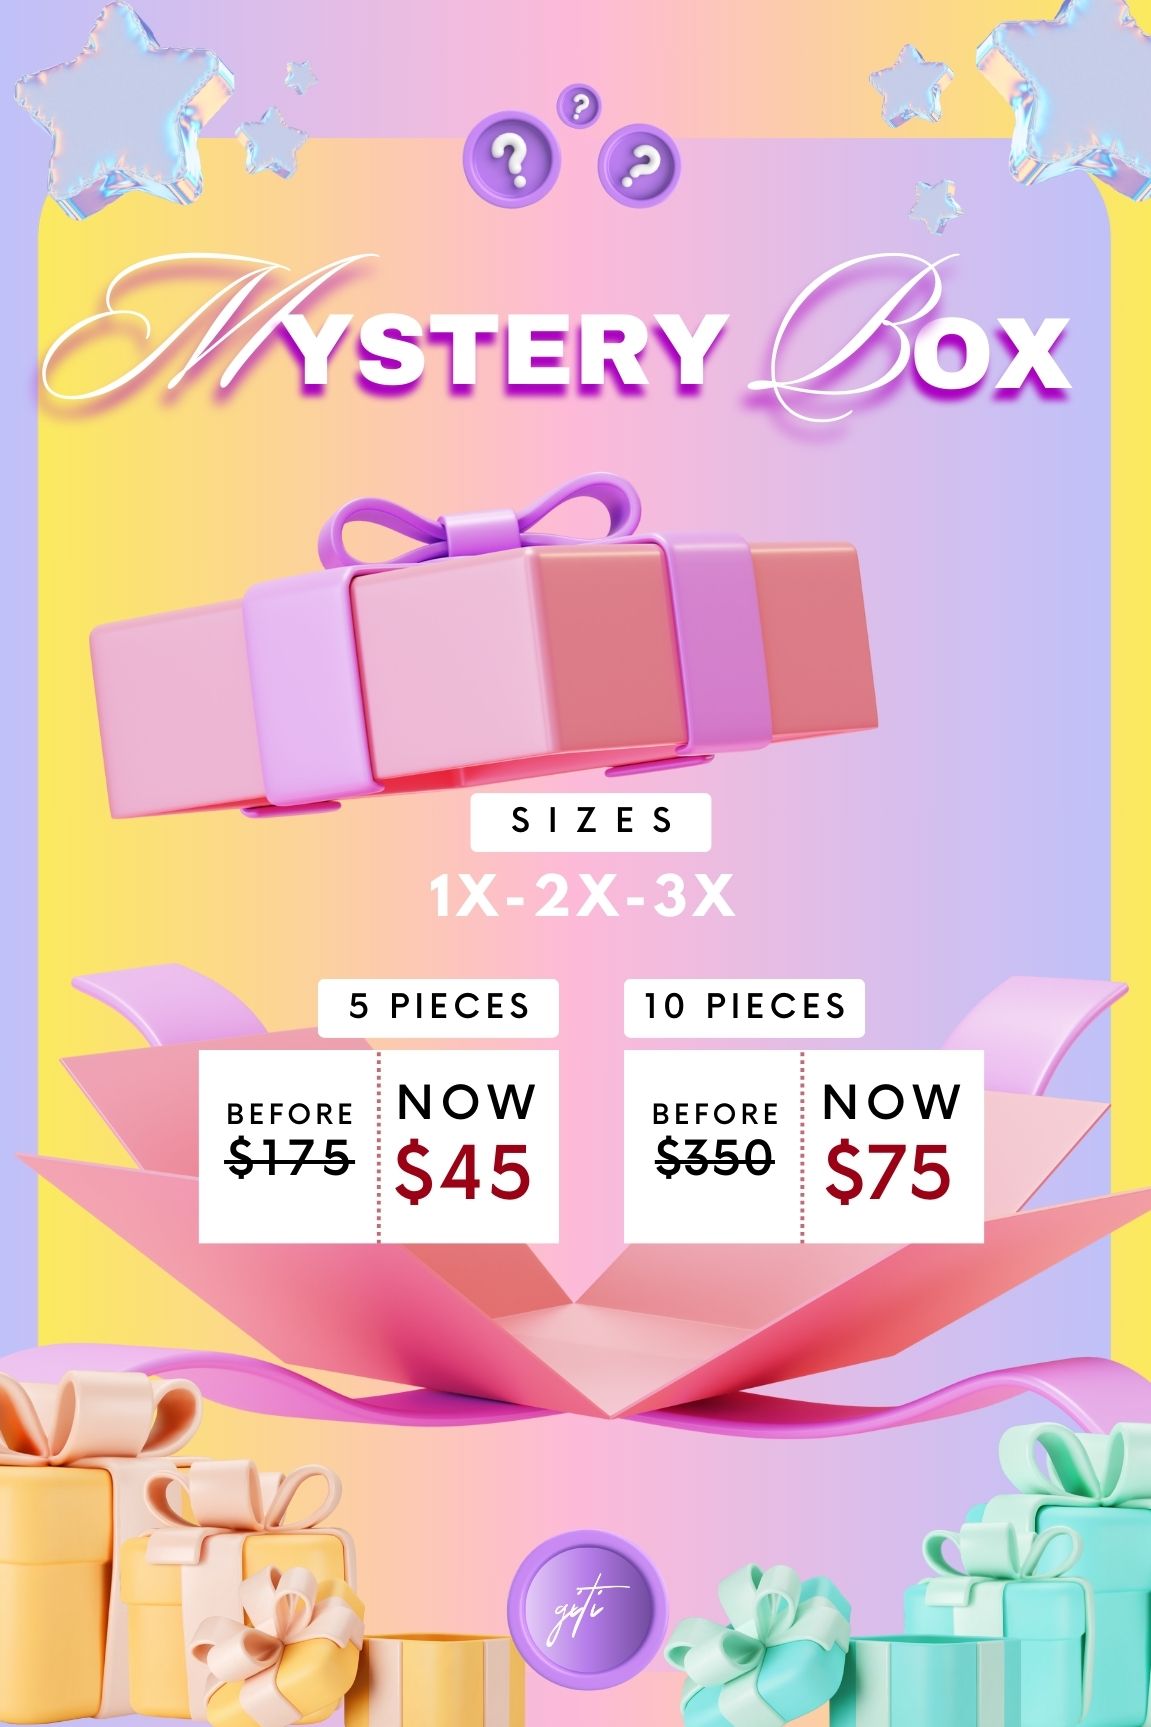 Mystery Box (1X-2X-3X)